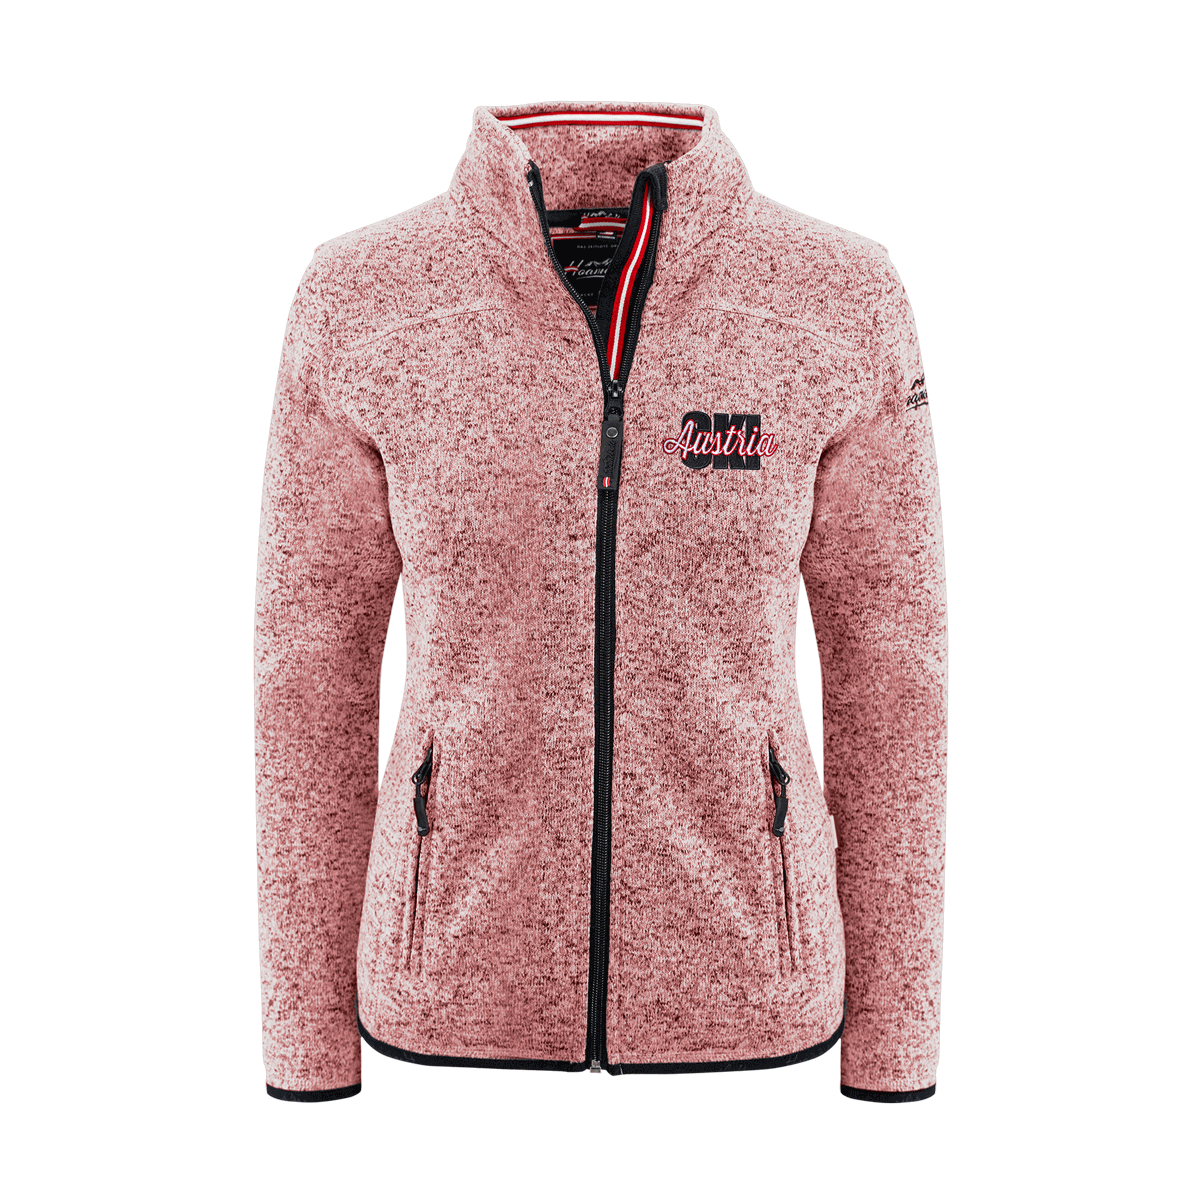 Austria Ski Strickfleece Jacke rosa Damen #Farbe_Rosa